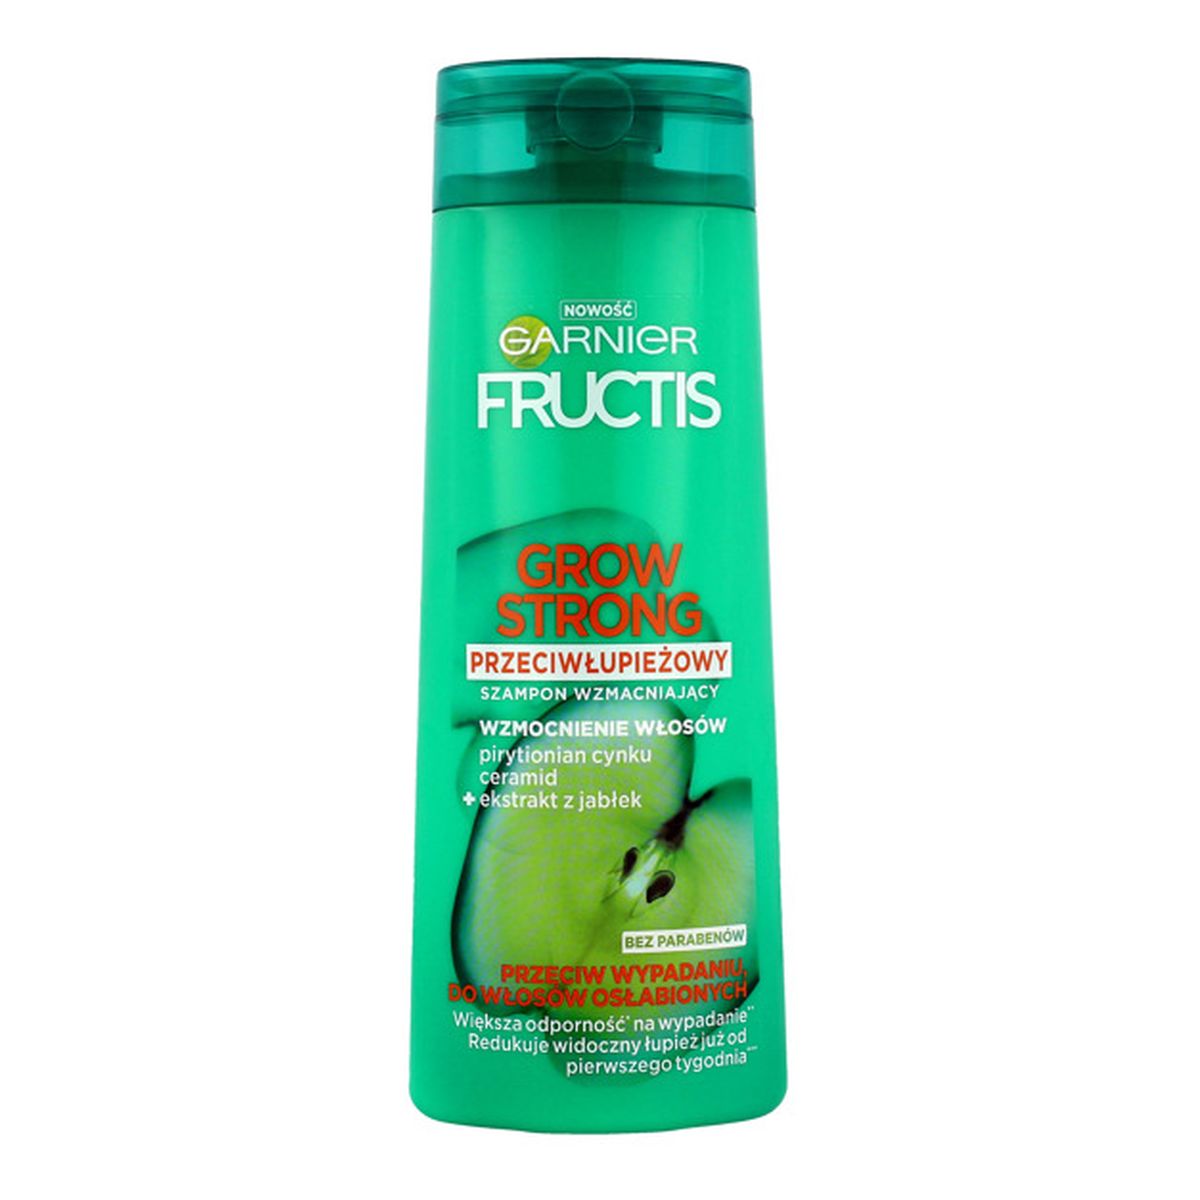 Garnier Fructis Grow Strong przeciwłupieżowy szampon do włosów przeciw wypadaniu 400ml